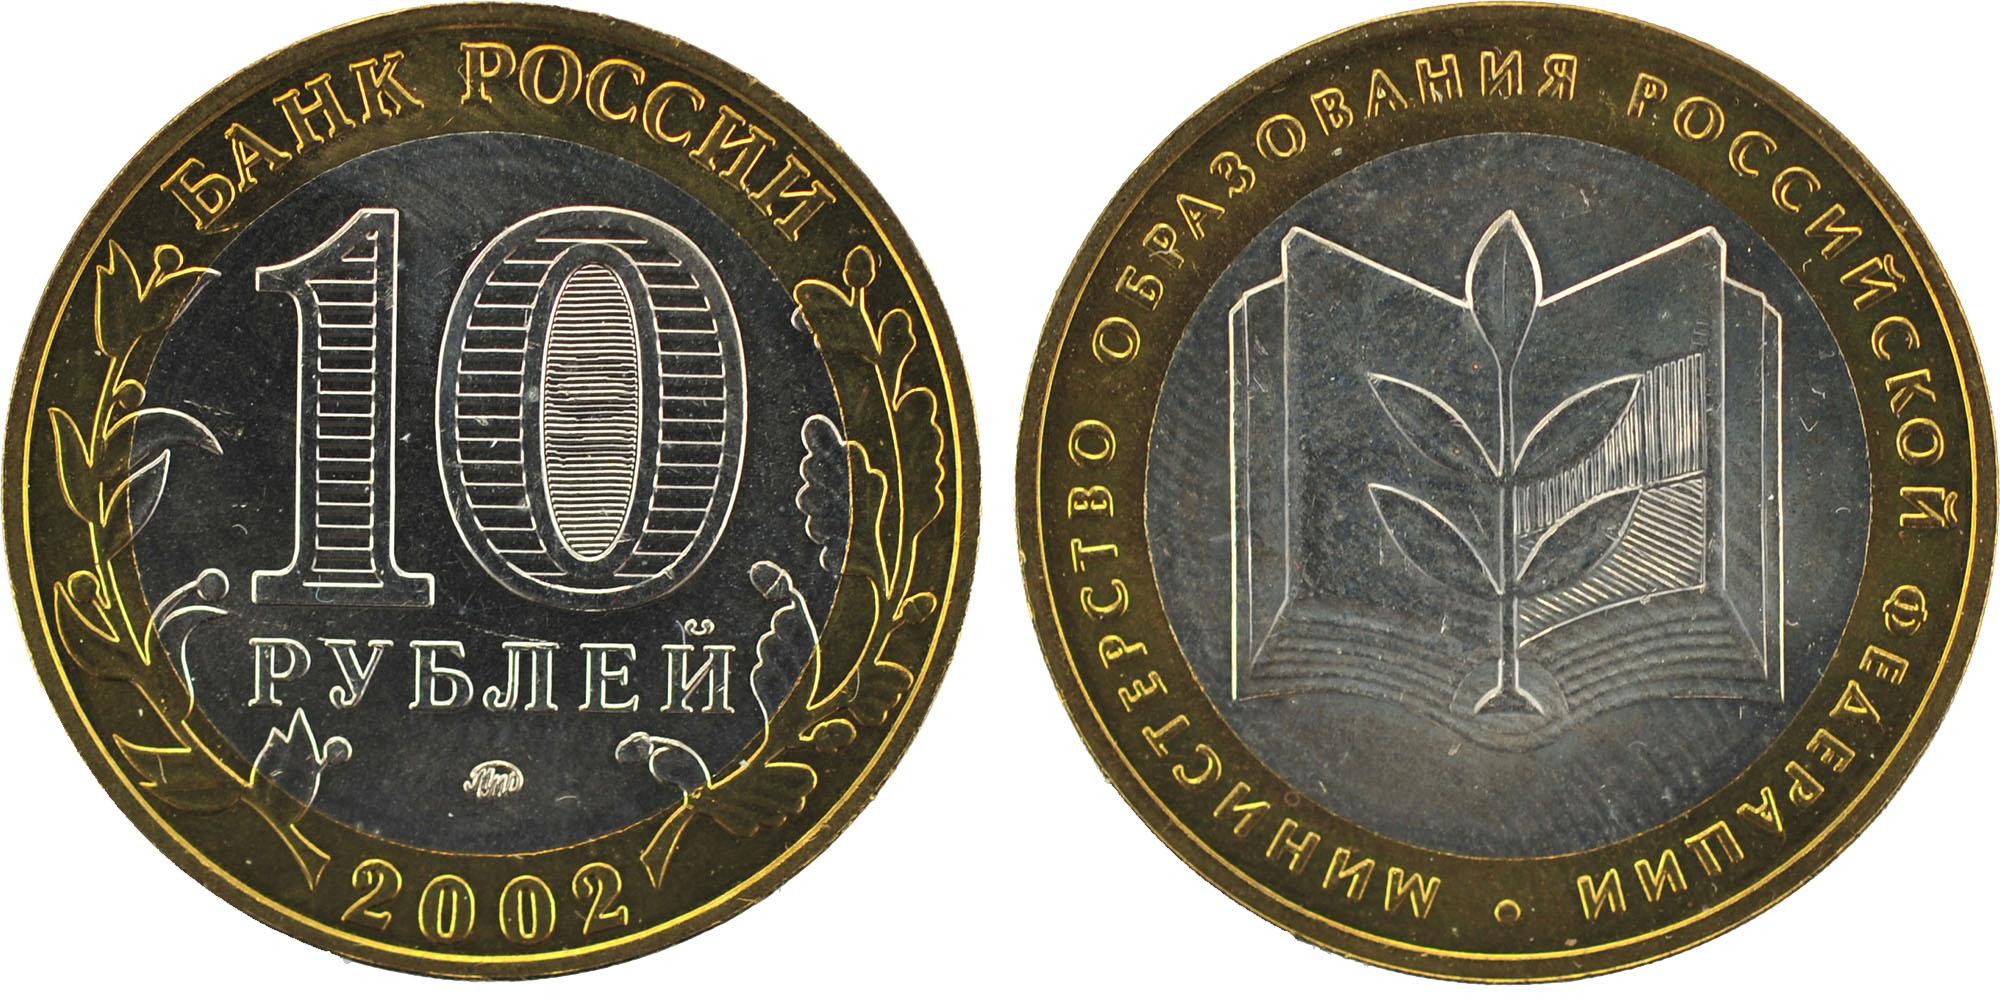 10 рублей 2002 года Министерство образование Российской Федерации